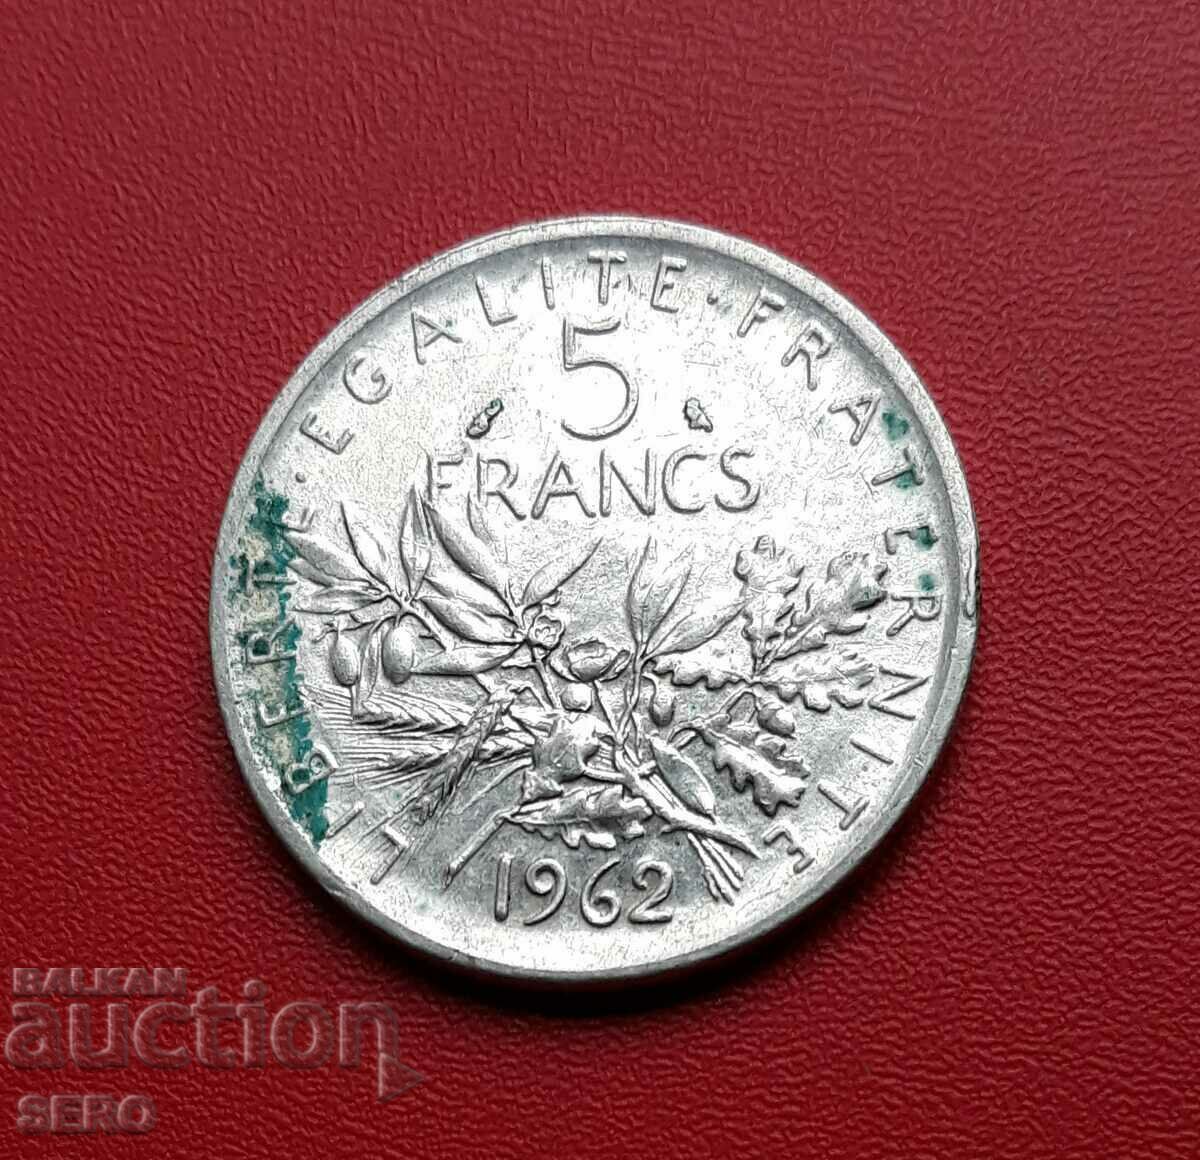 Franta-5 franci 1962-argint